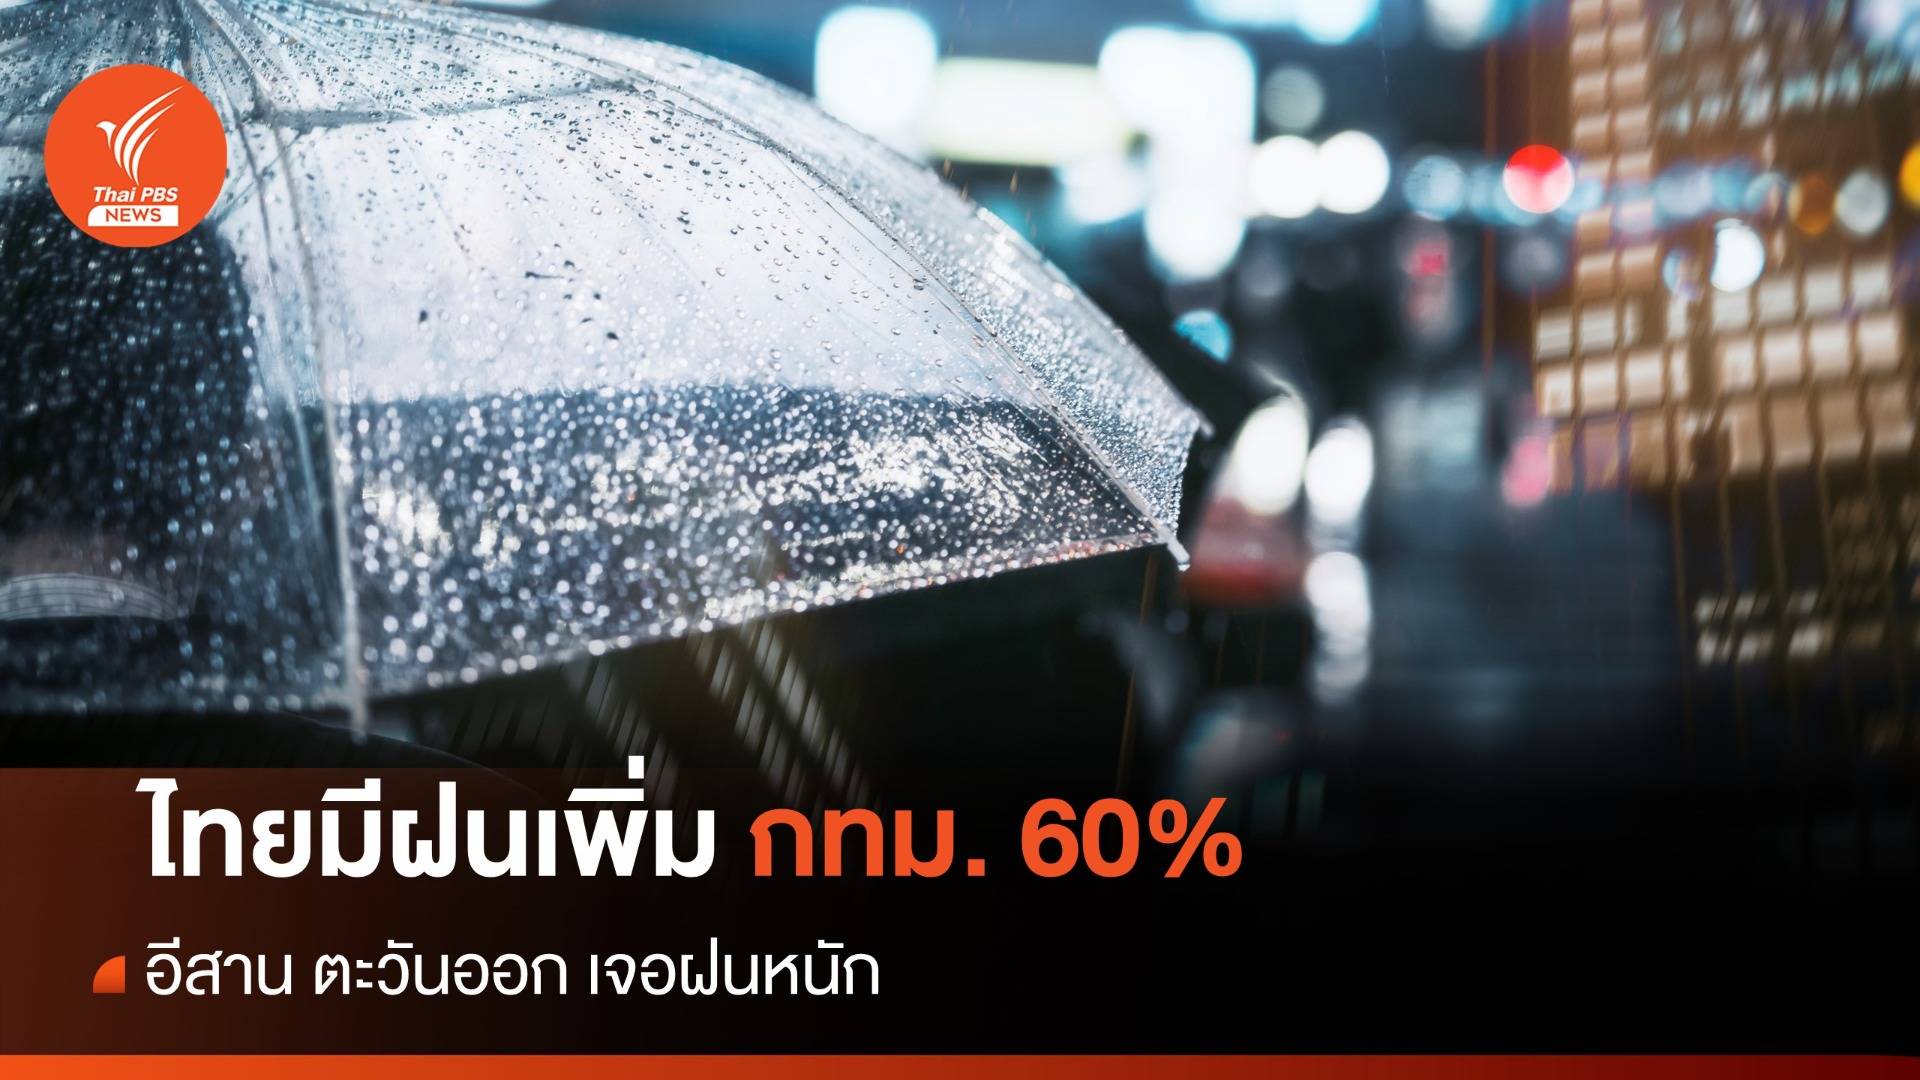 สภาพอากาศวันนี้ ไทยมีฝนเพิ่ม อีสาน ตะวันออก ฝนตกหนัก - กทม. 60%